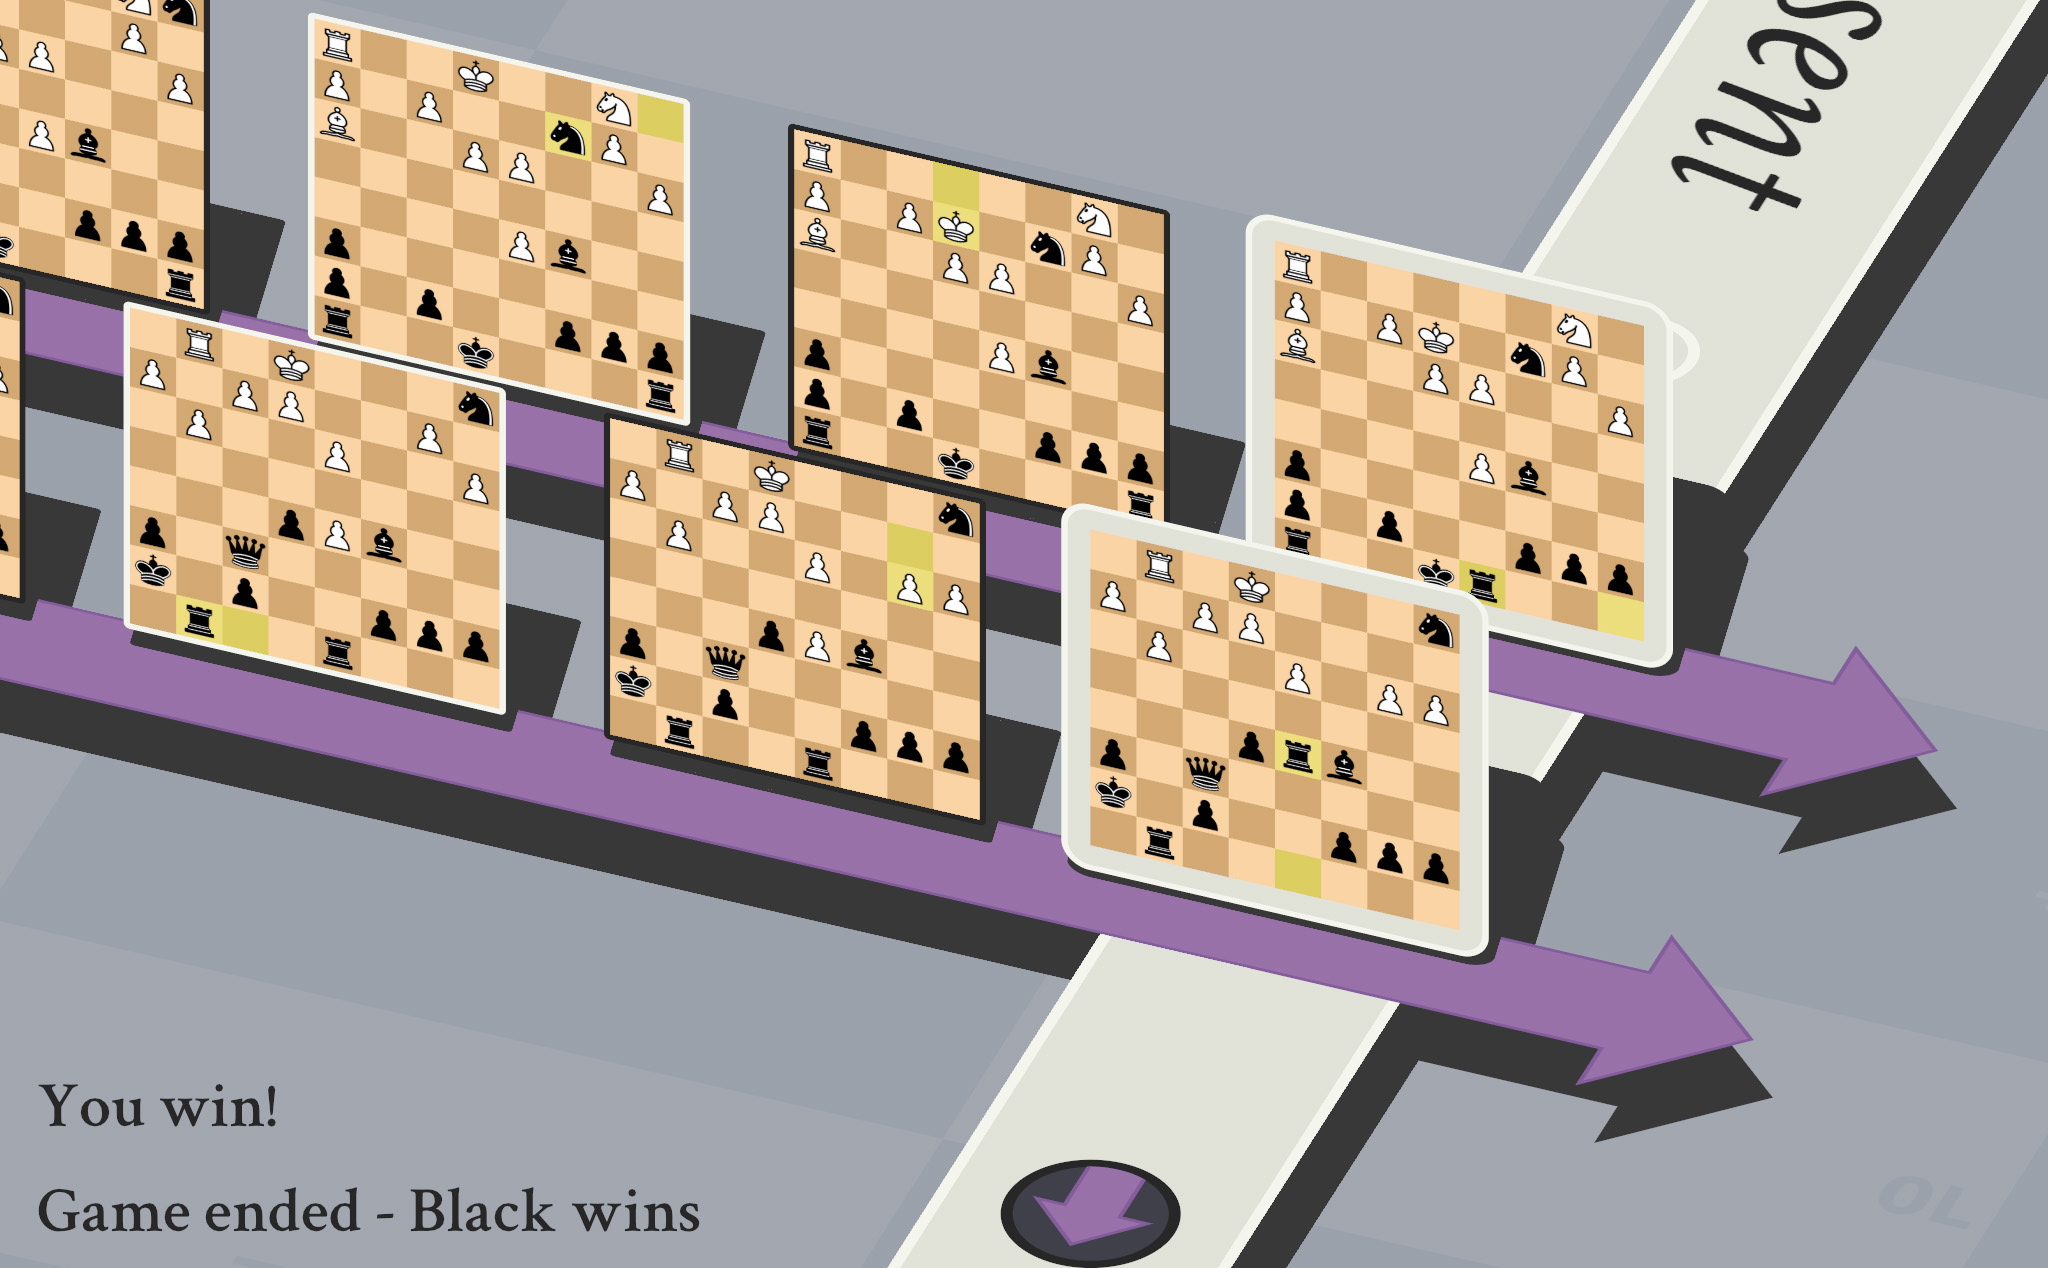 Xoắn não: 5D Chess, cũng là cờ vua nhưng giống hệt vũ trụ song song Marvel